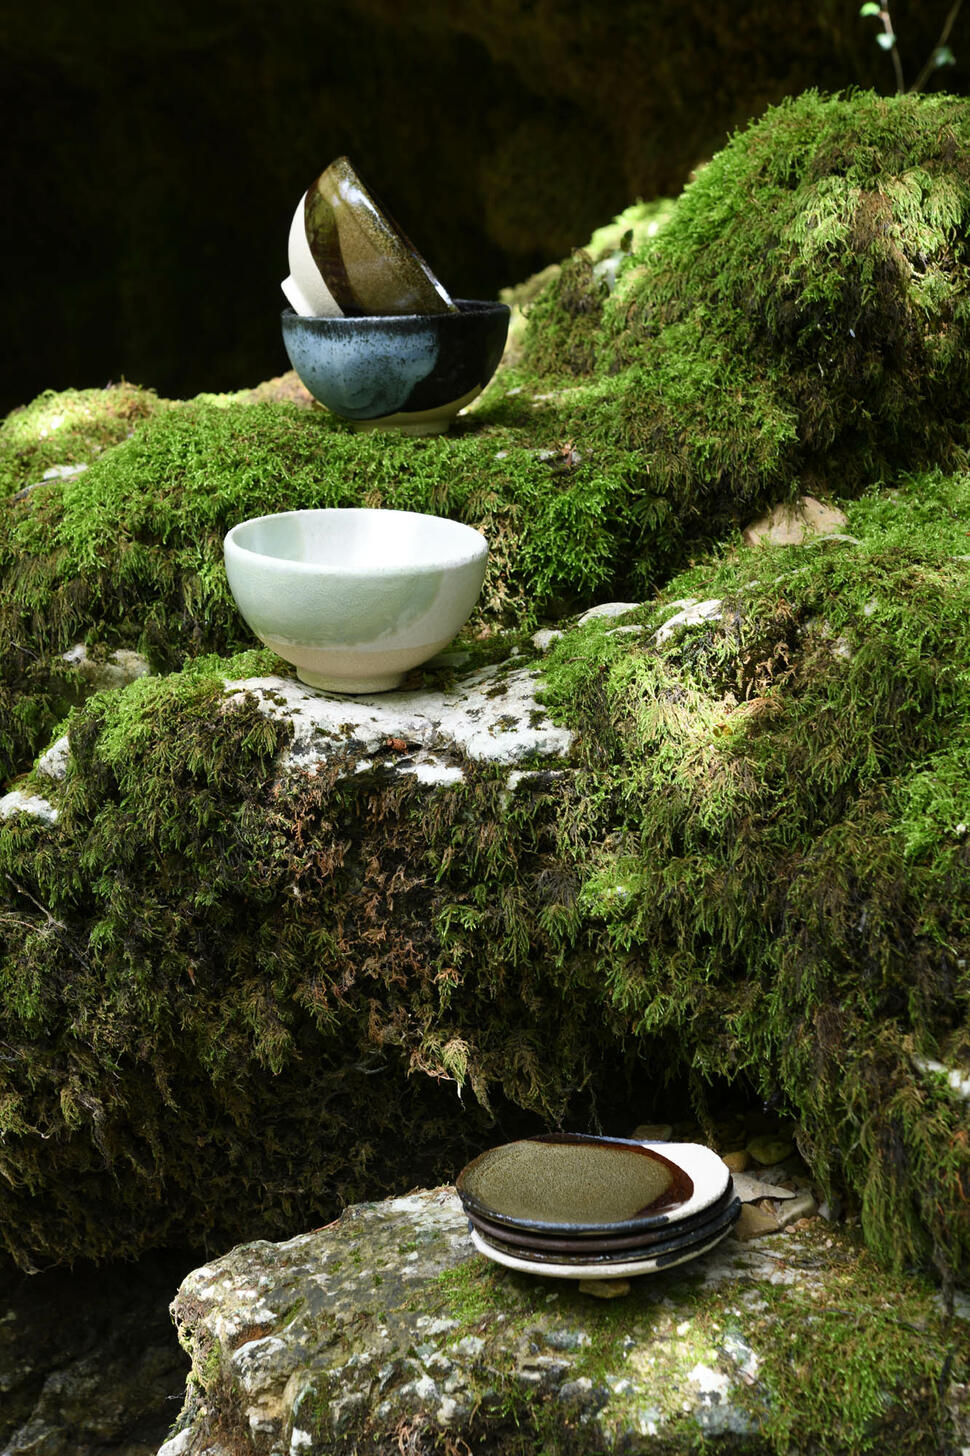 bowl wabi kemuri ceramic manufacturer